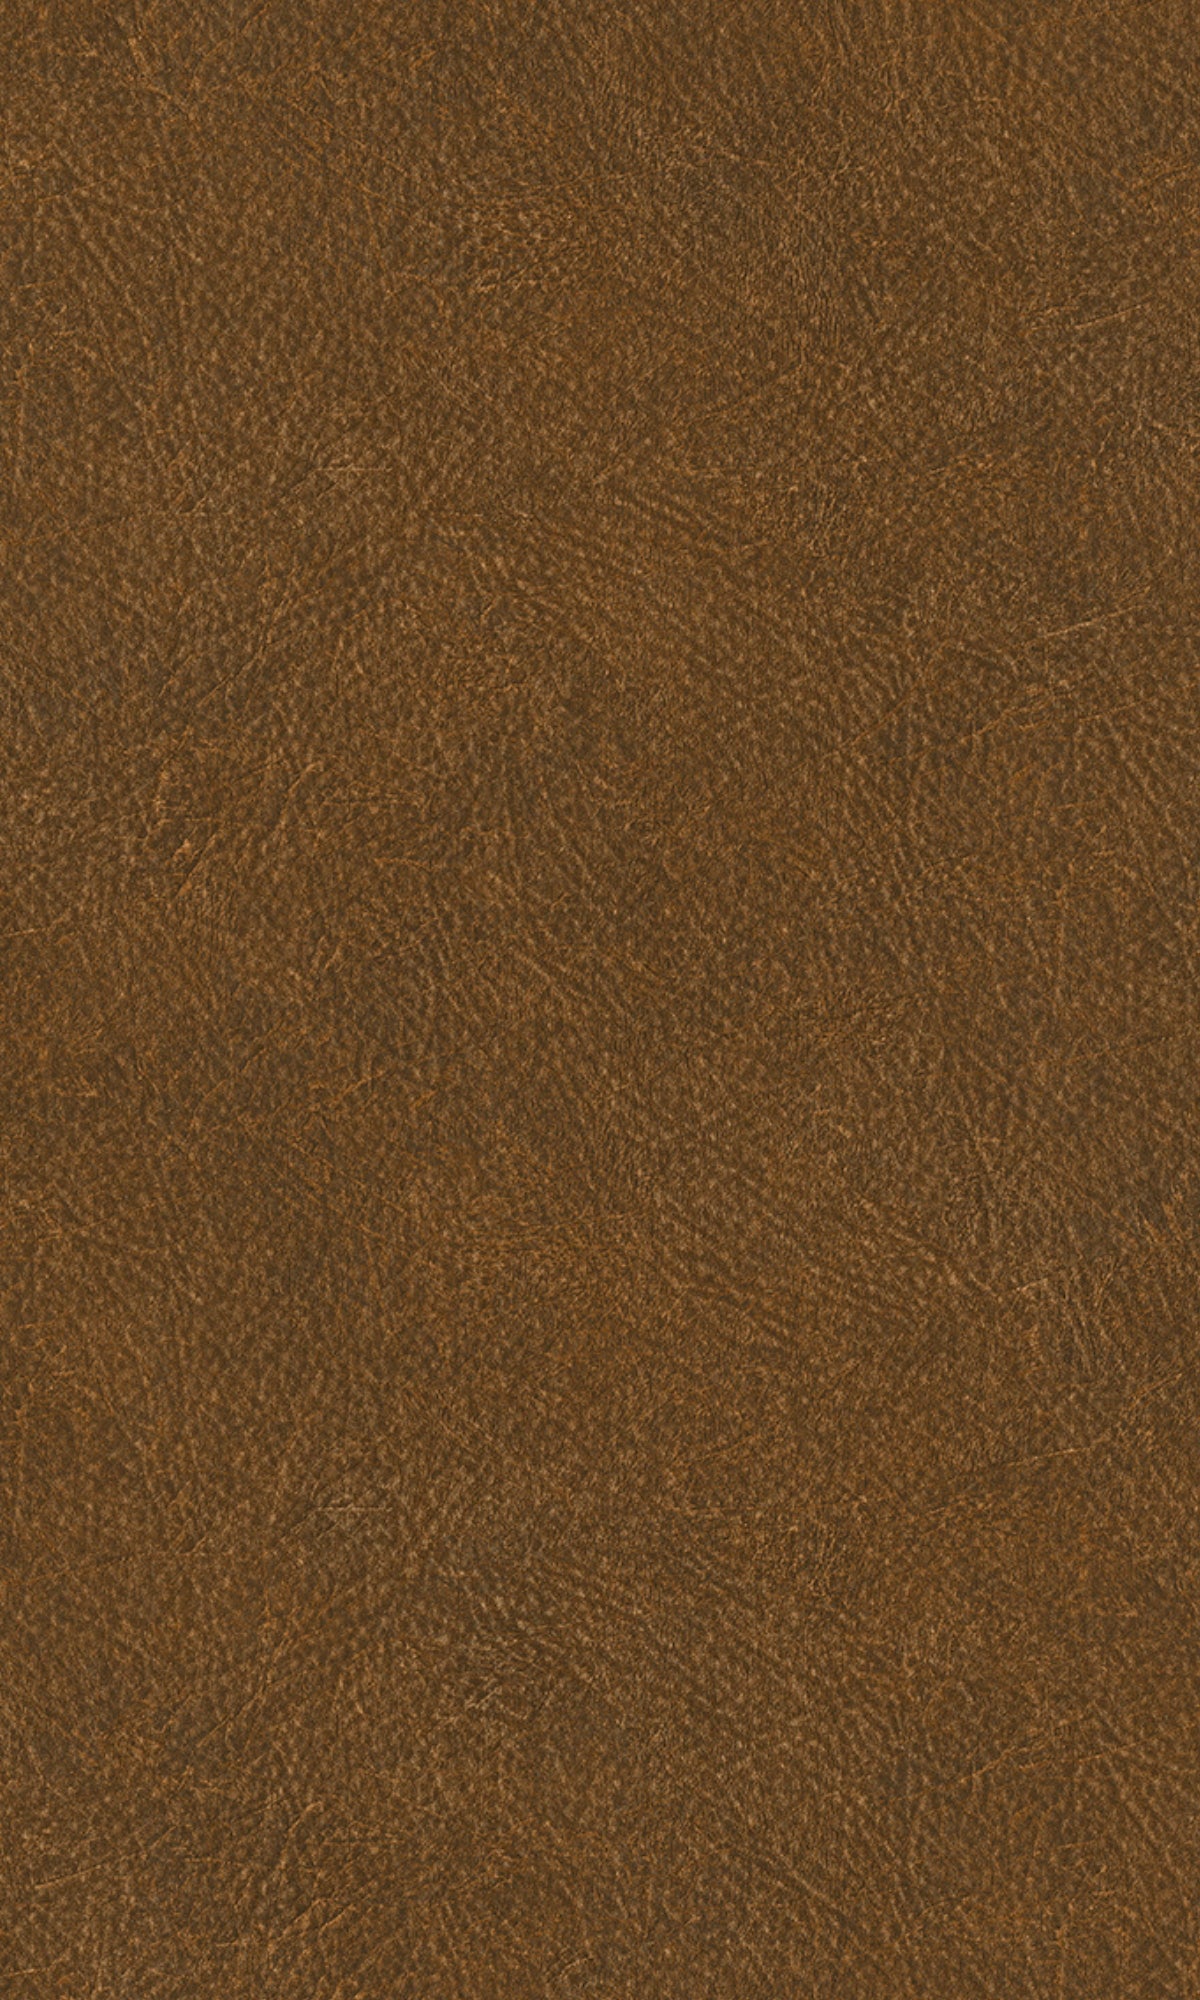 Cognac Plain Leather Textured Wallpaper R8218